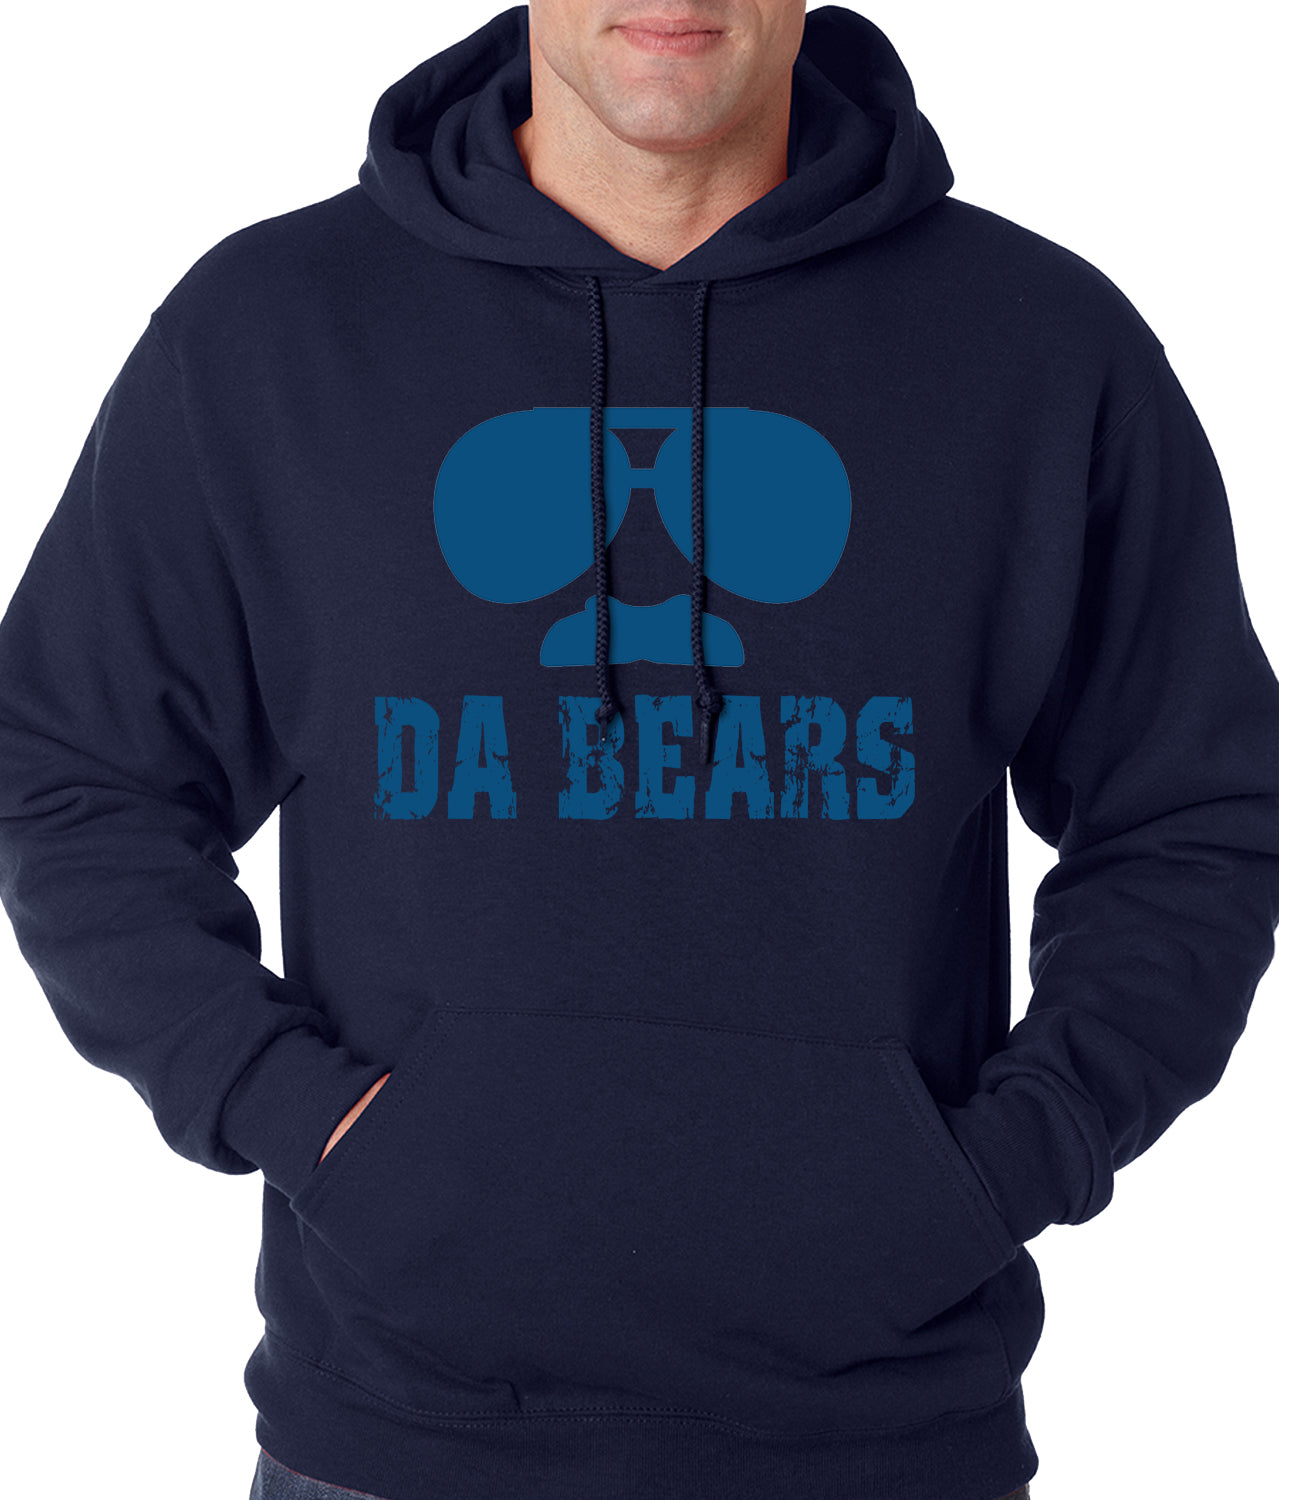 da bears hoodie